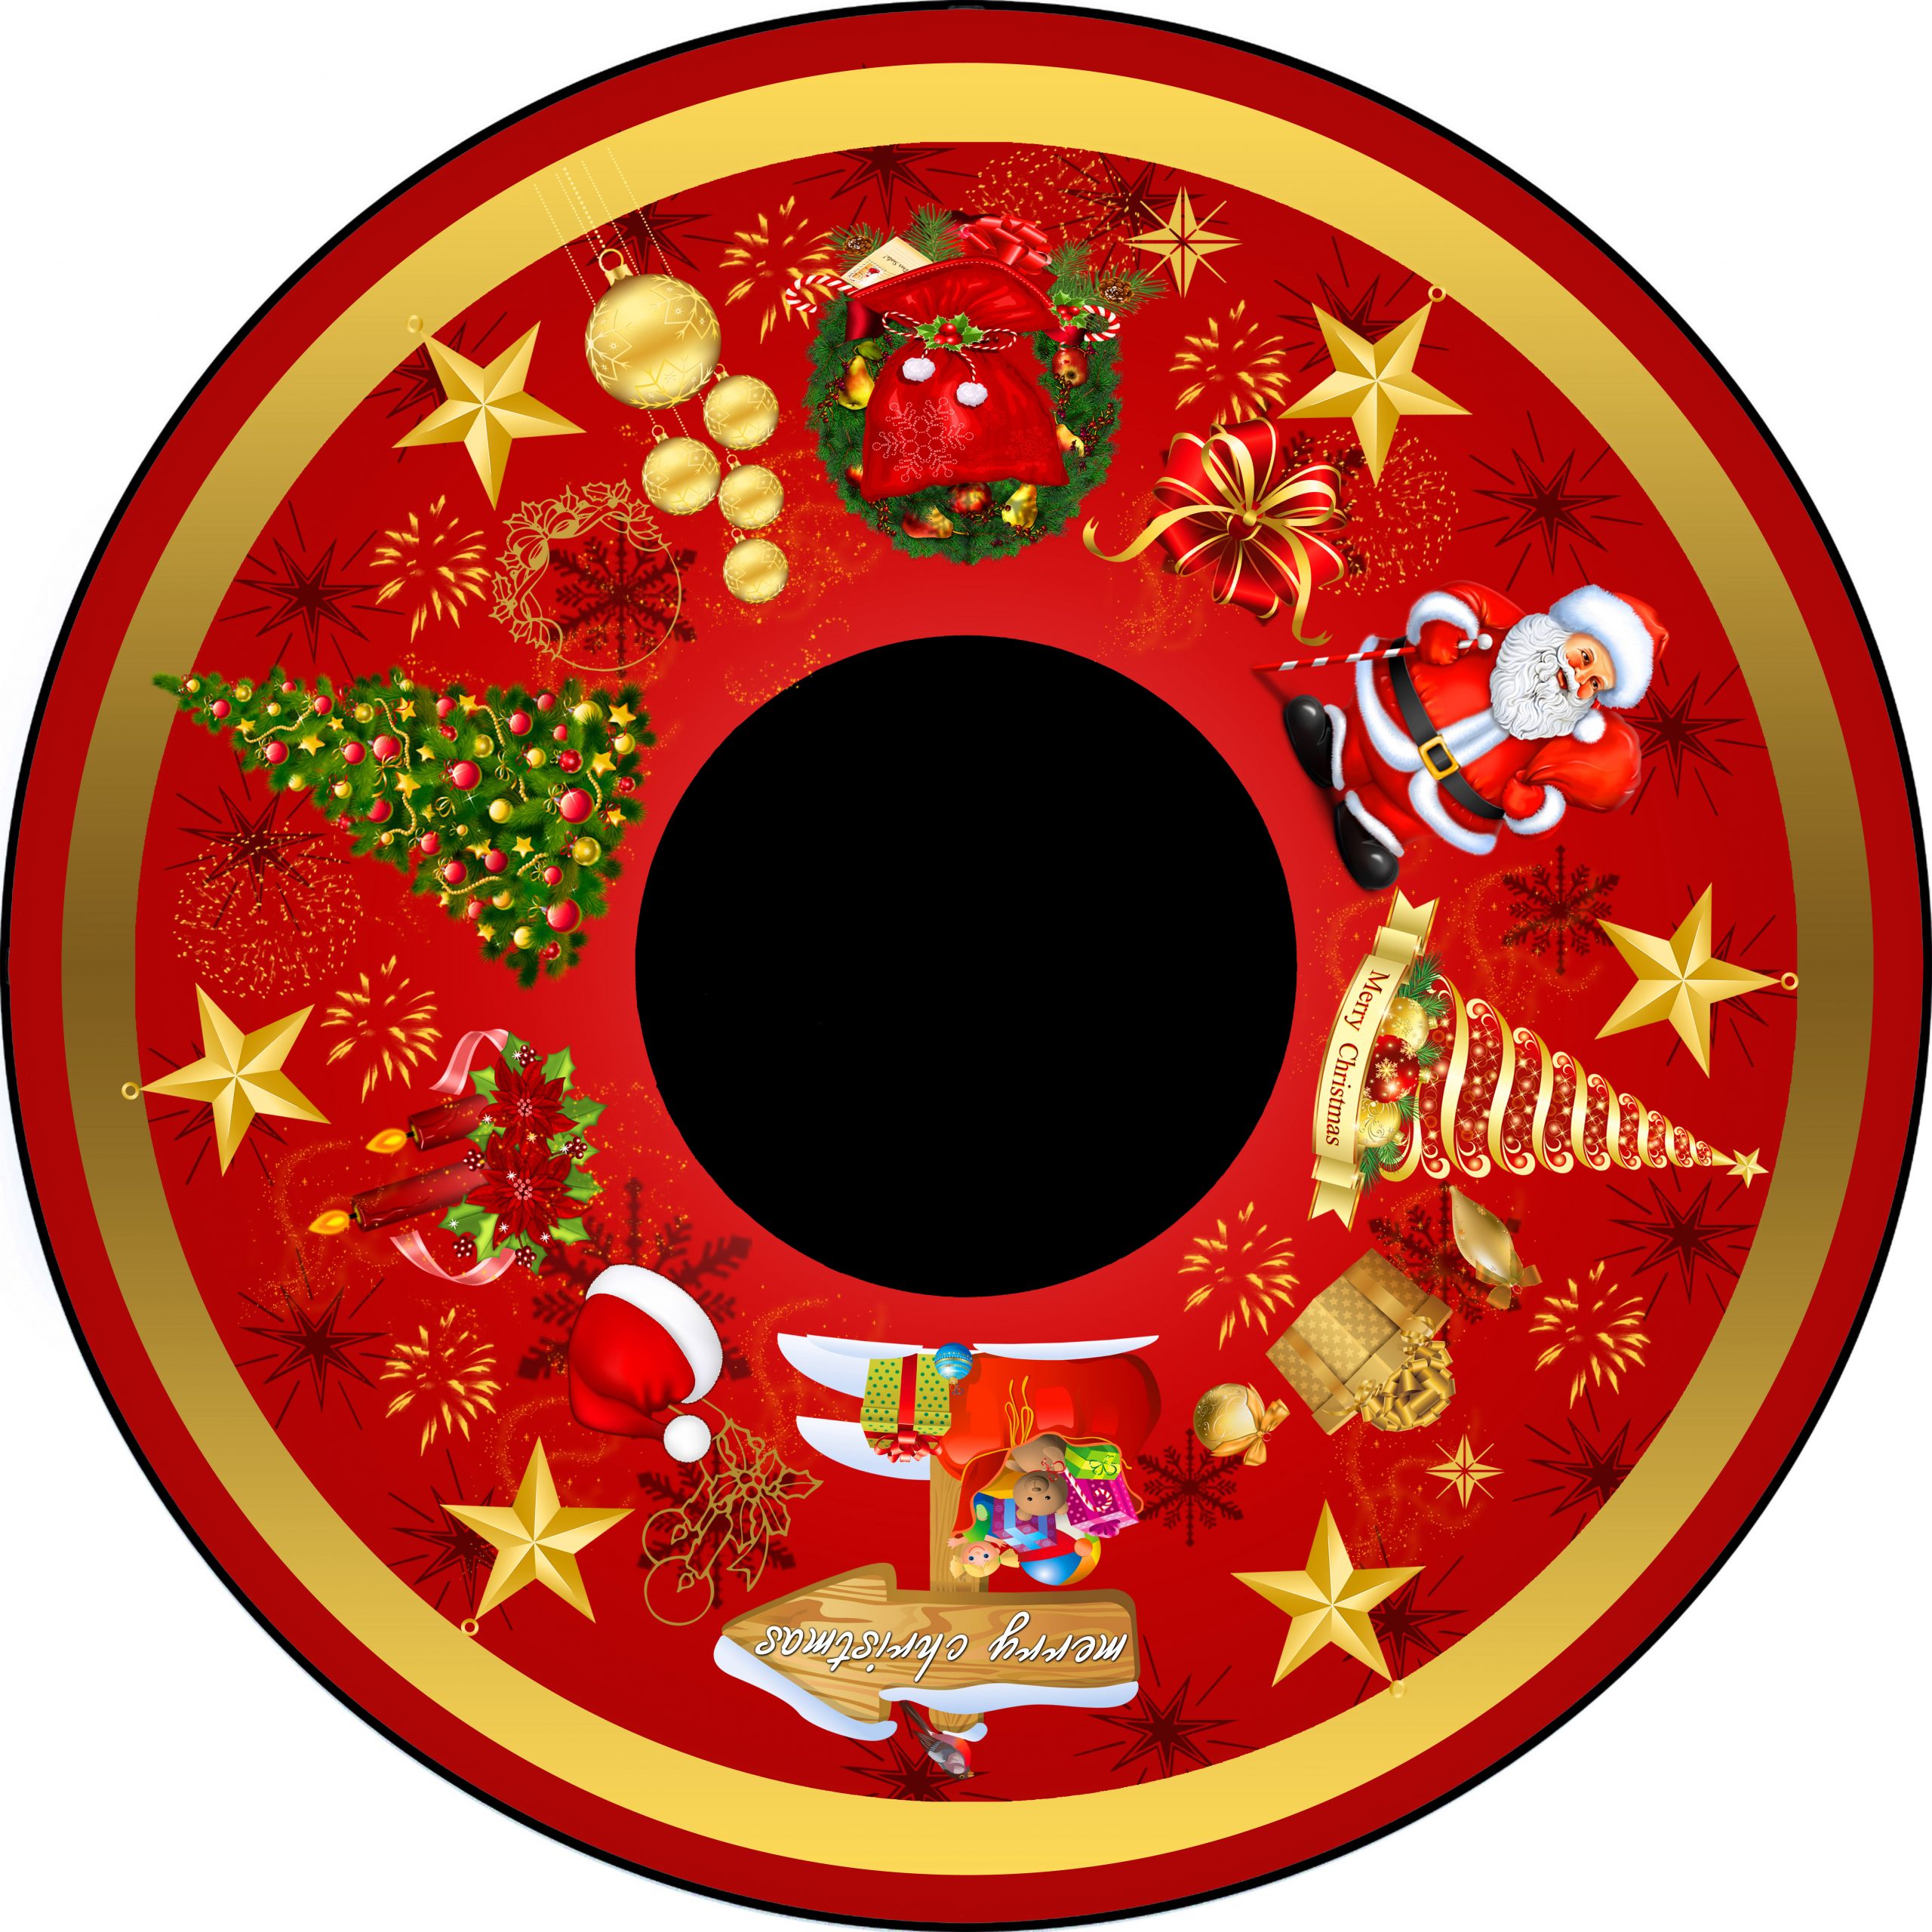 Traditional Christmas wheel